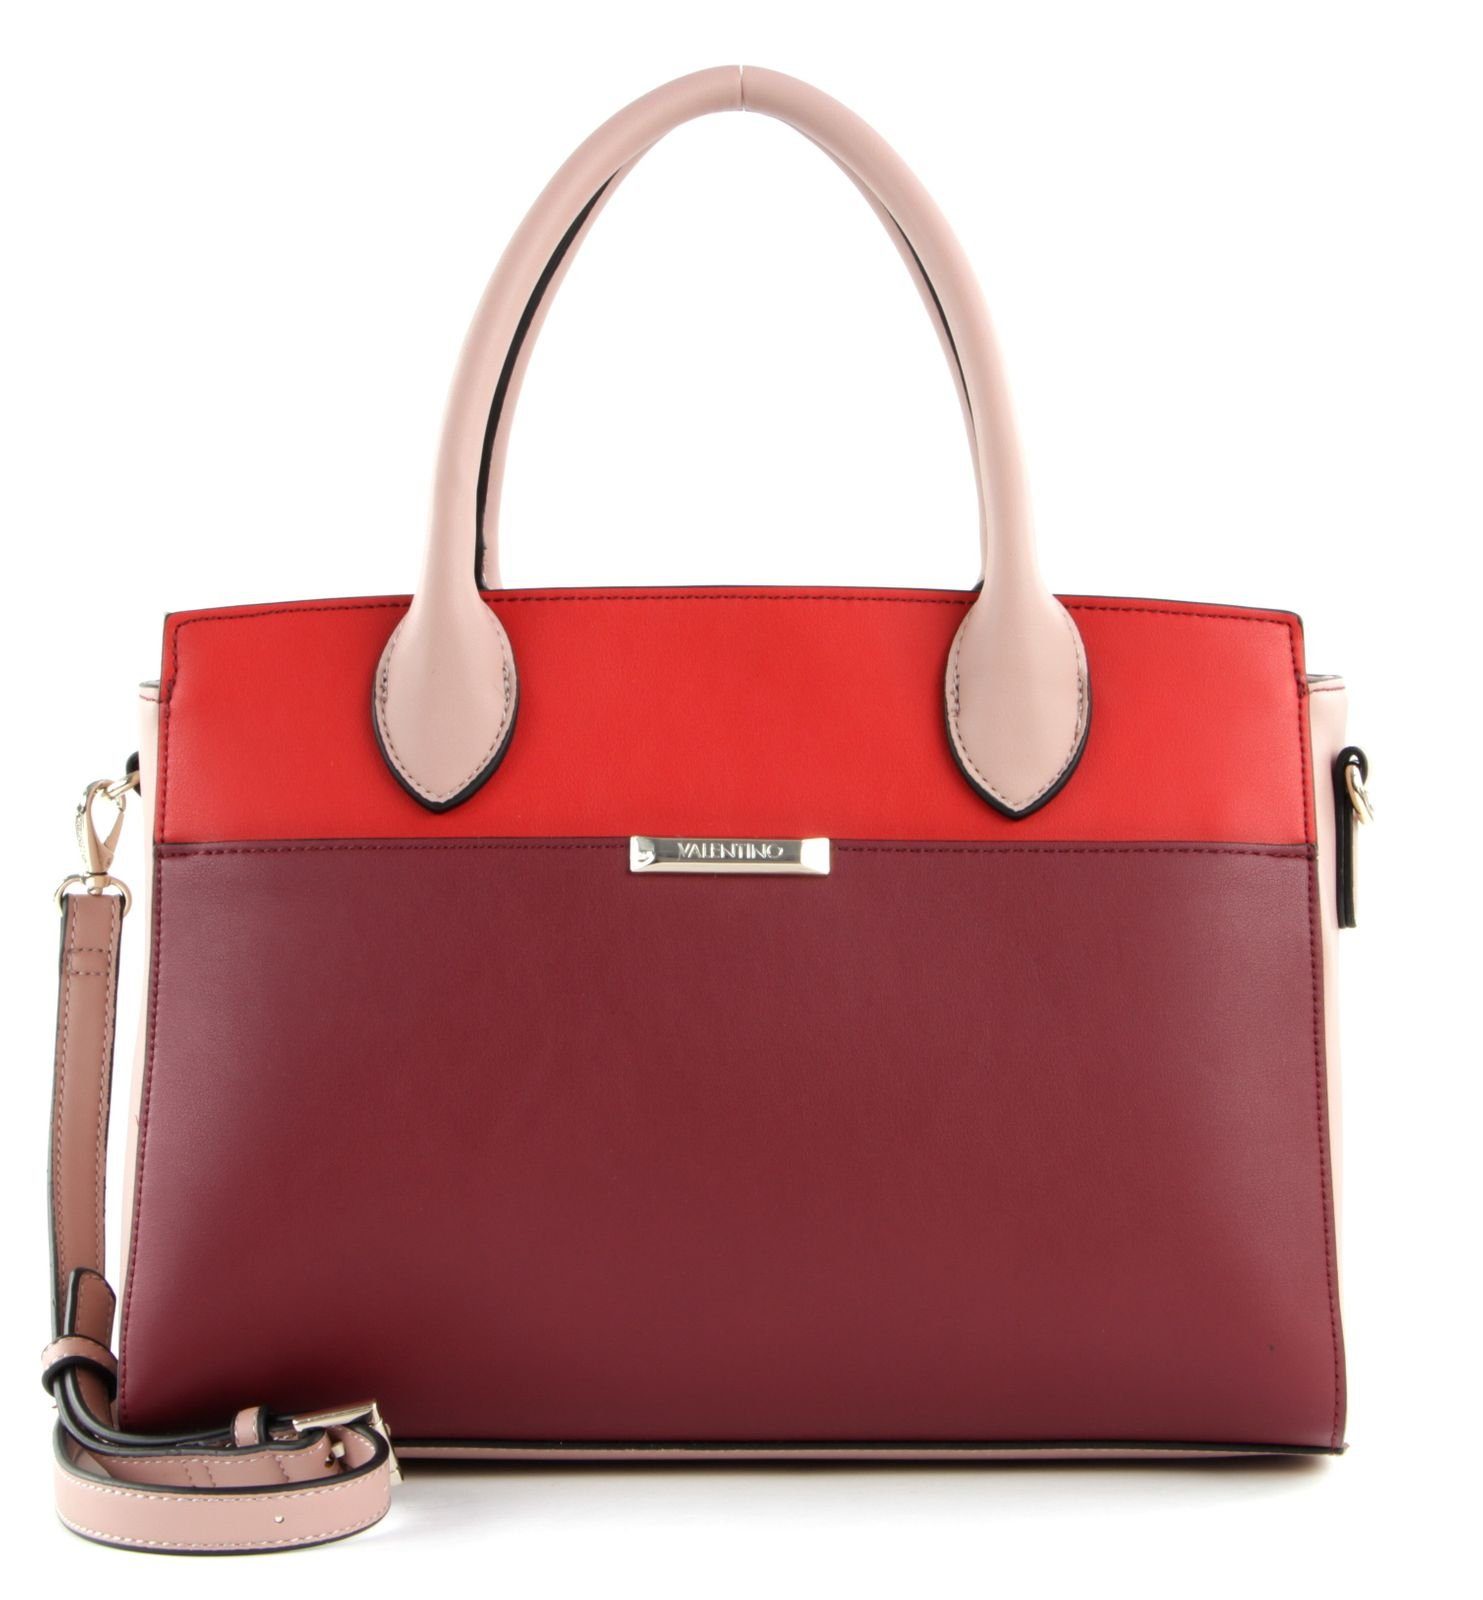 VALENTINO BAGS Handtasche Multicolor Rossio / Rosso